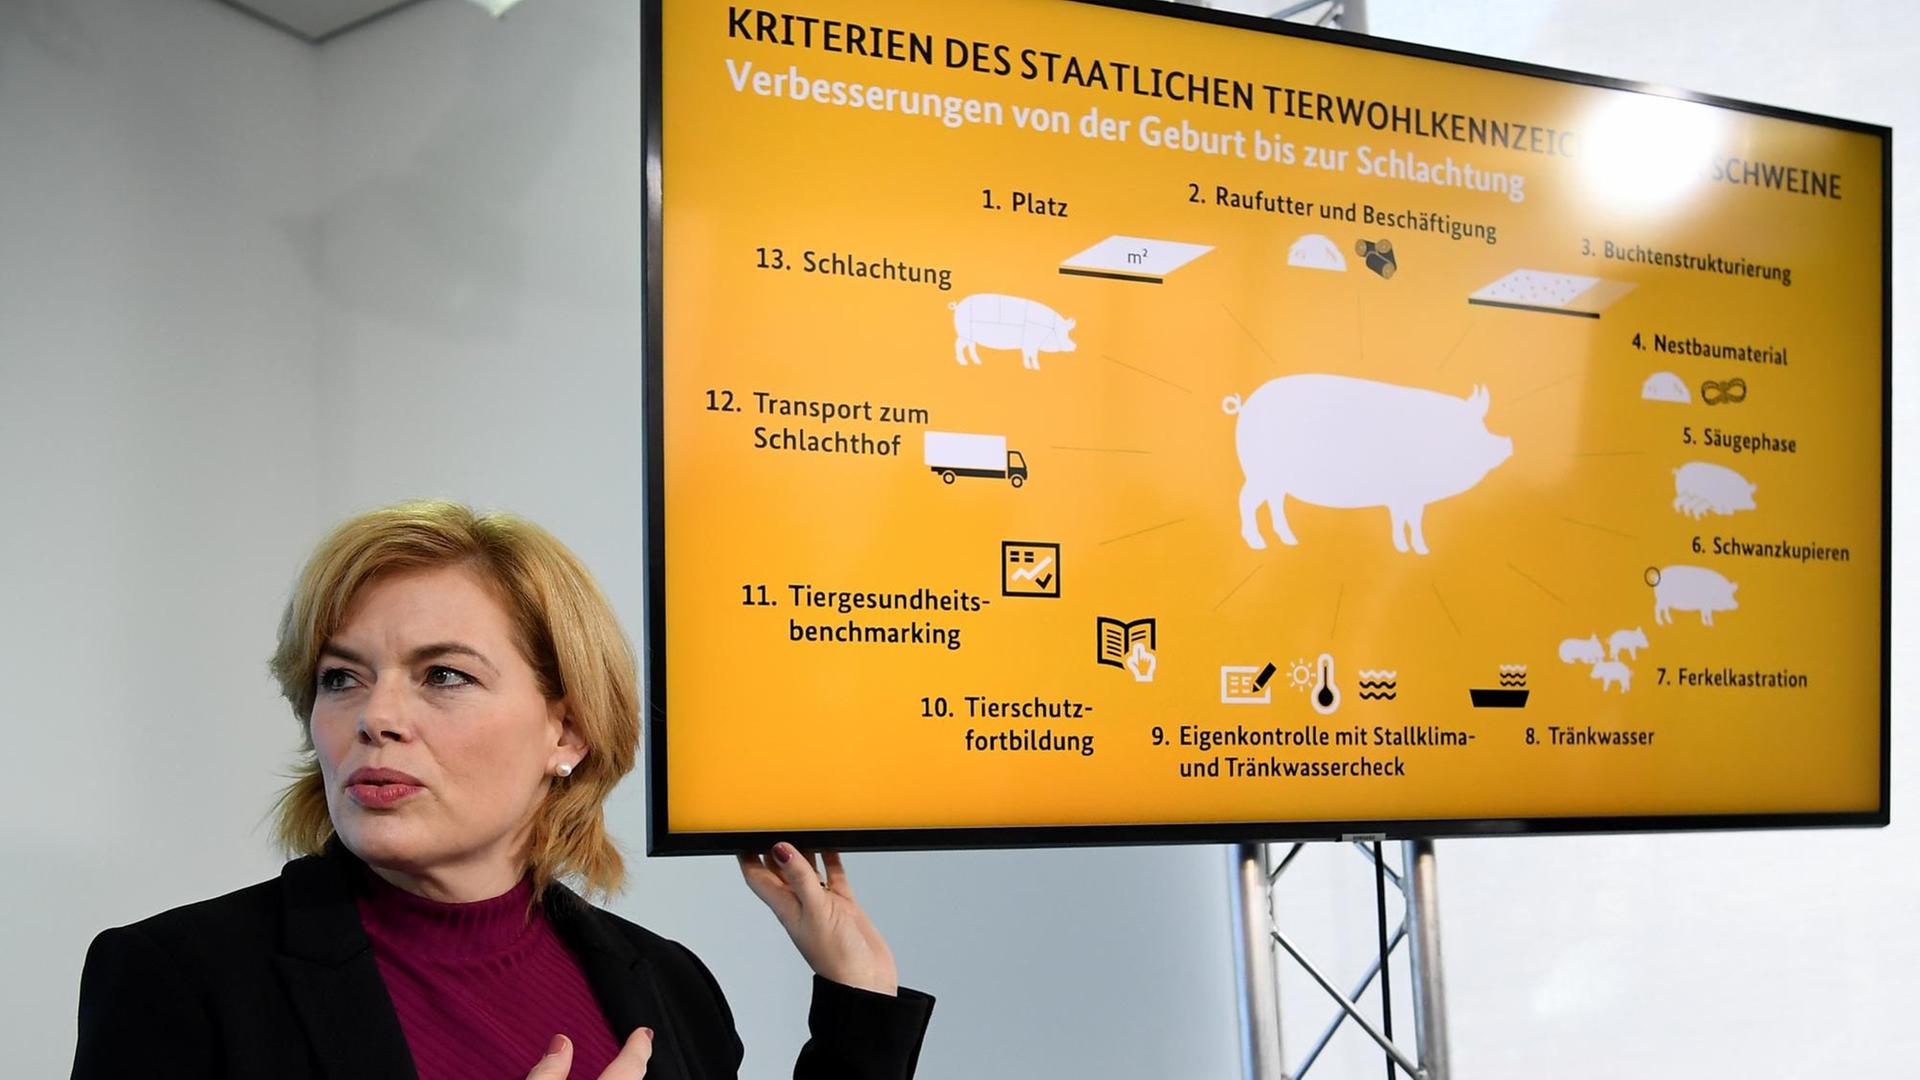 Bundeslandwirtschaftsministerin Julia Klöckner (CDU) bei der Vorstellung der Kriterien für das staatliche Tierwohlkennzeichen im Februar